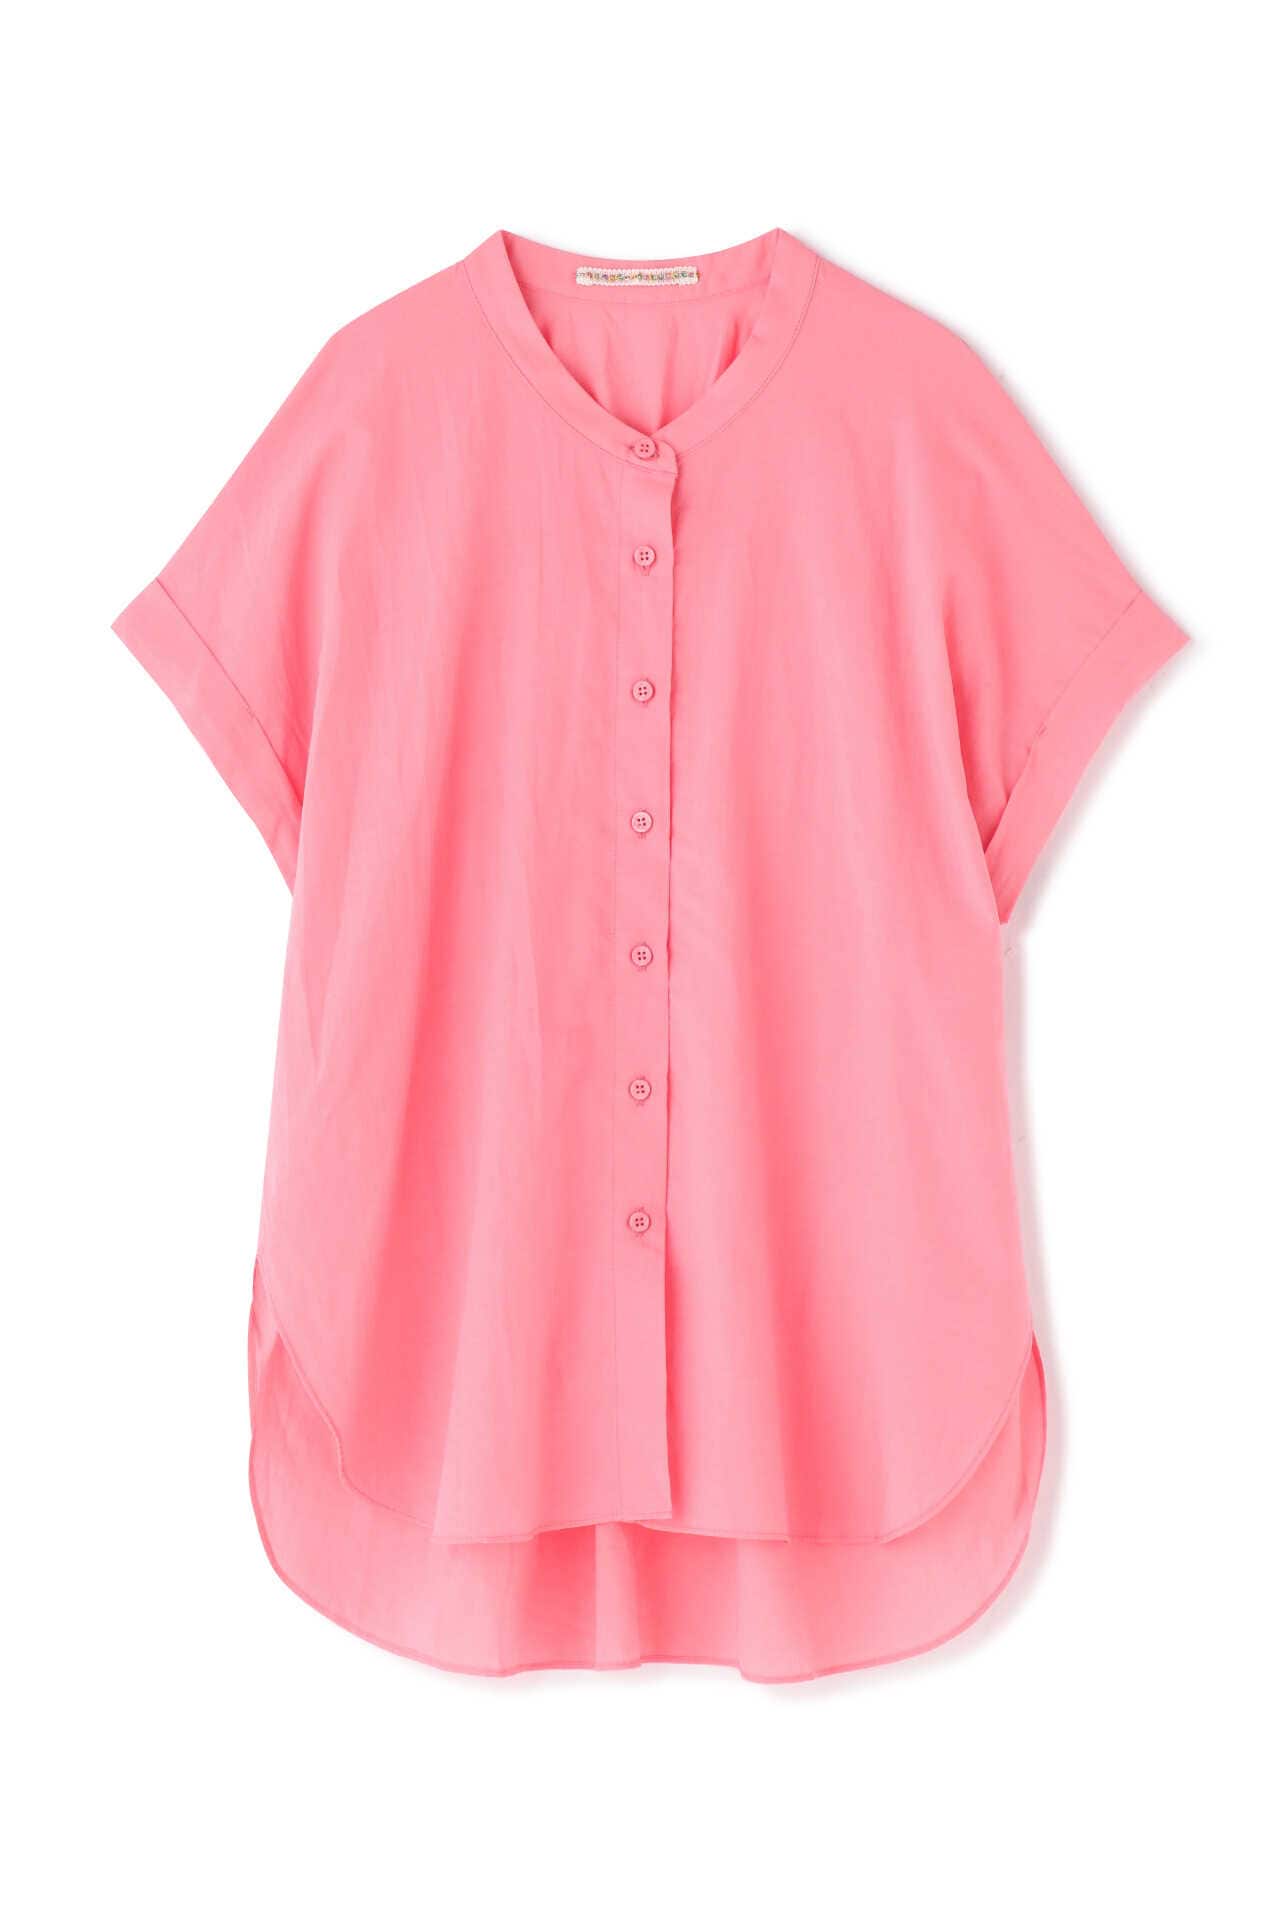 お手頃価格 gypsohila ピンク バンドカラーシャツ ジプソフィア シャツ